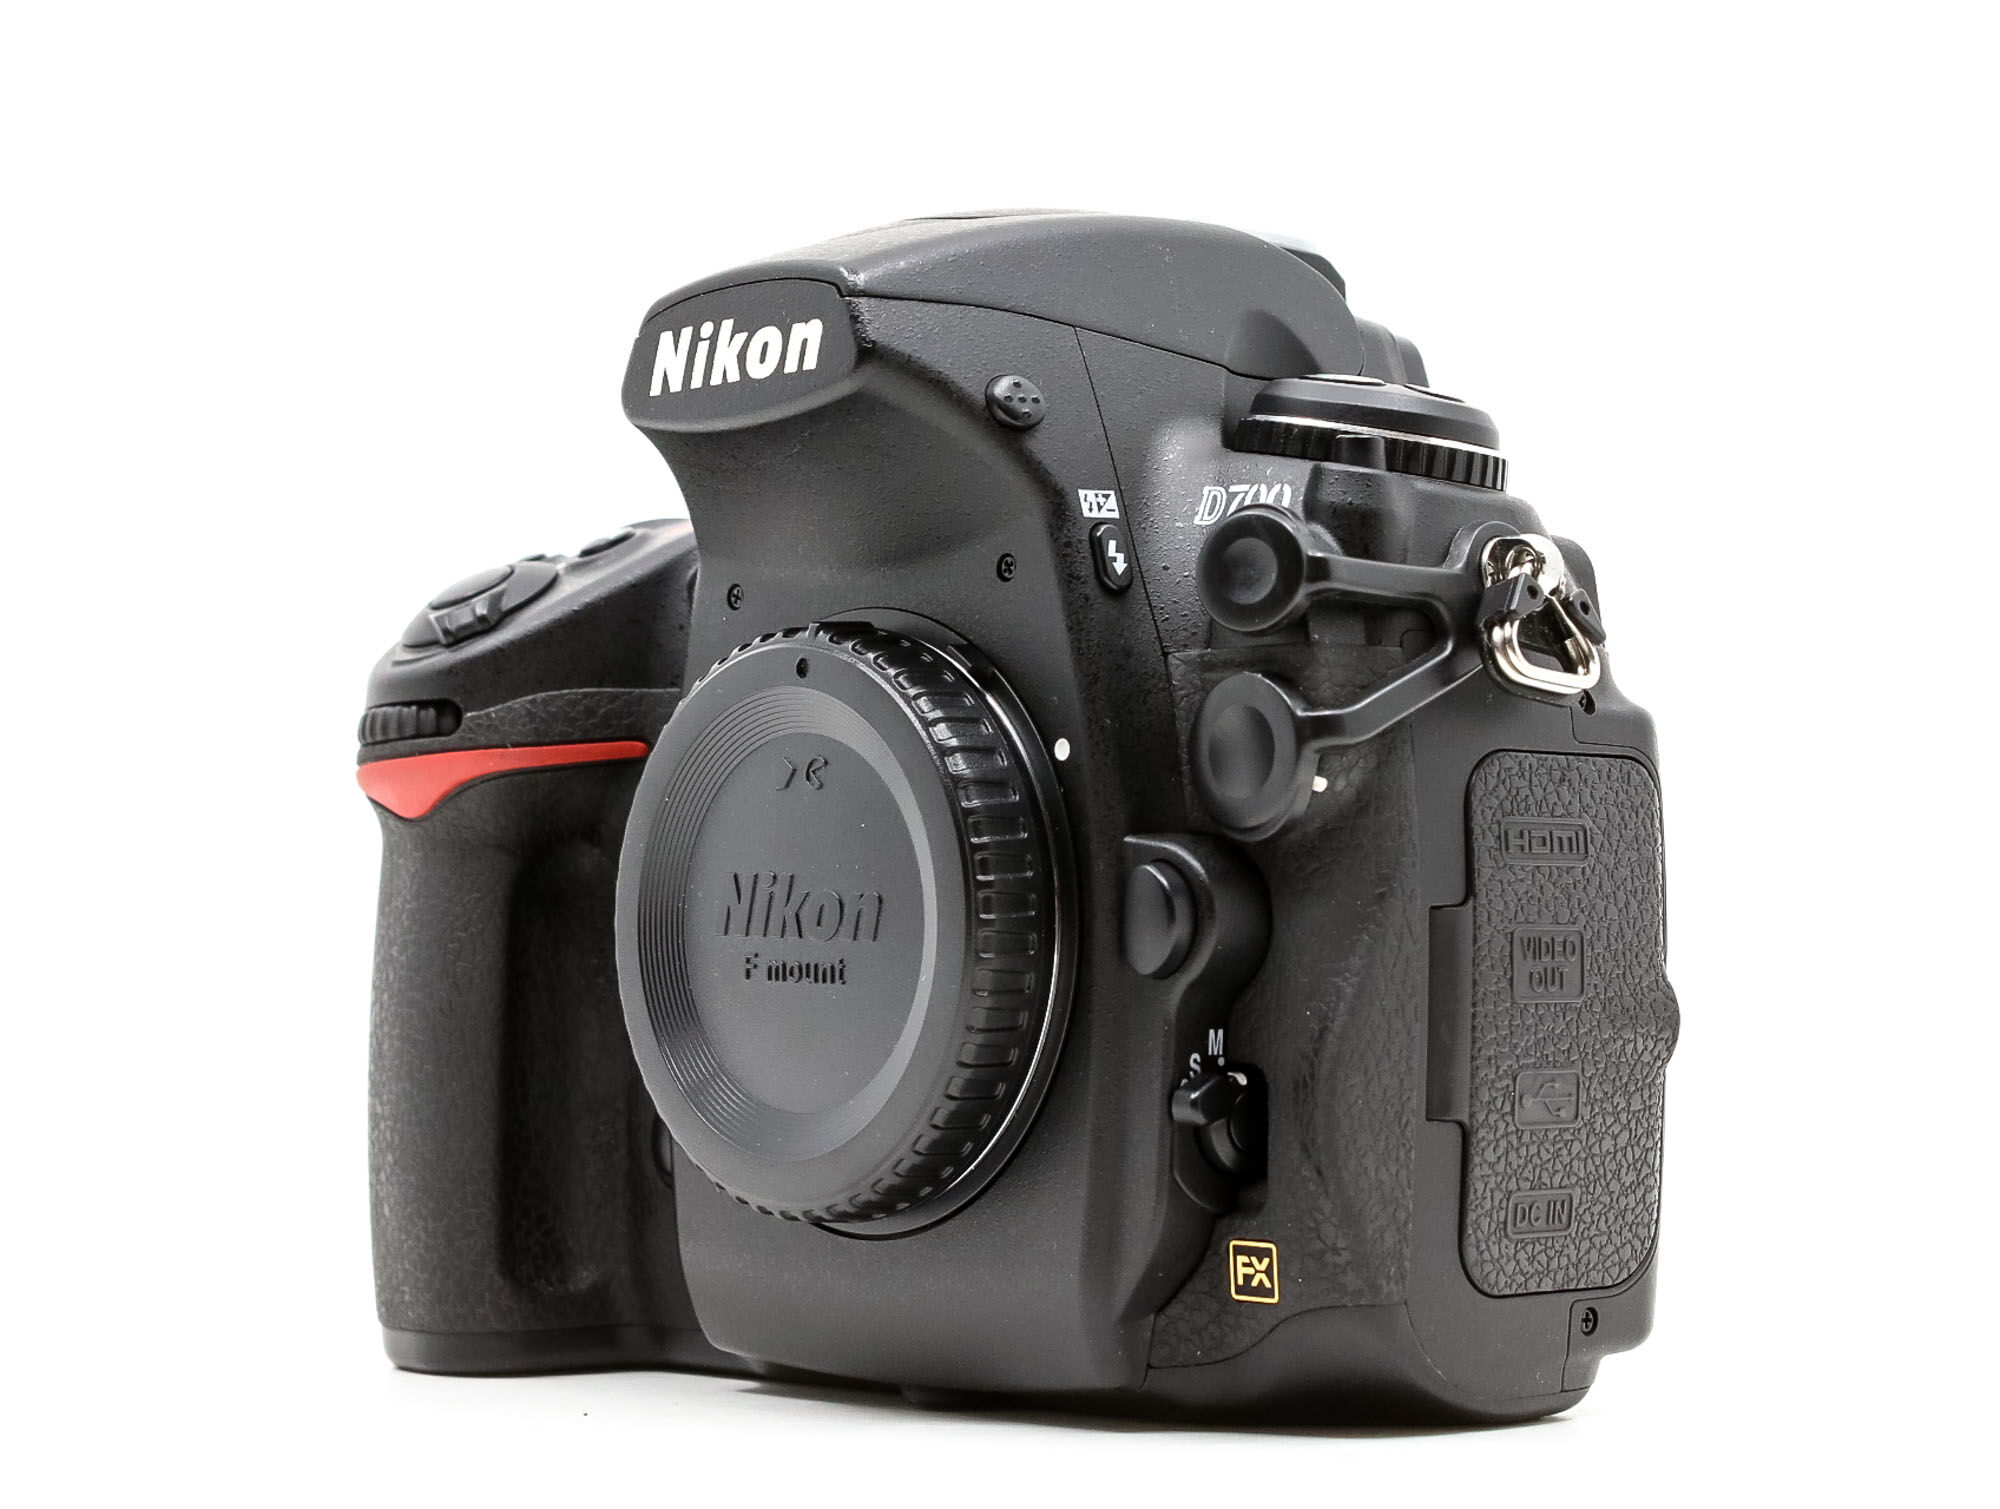 Nikon D700 (Condition: Excellent)